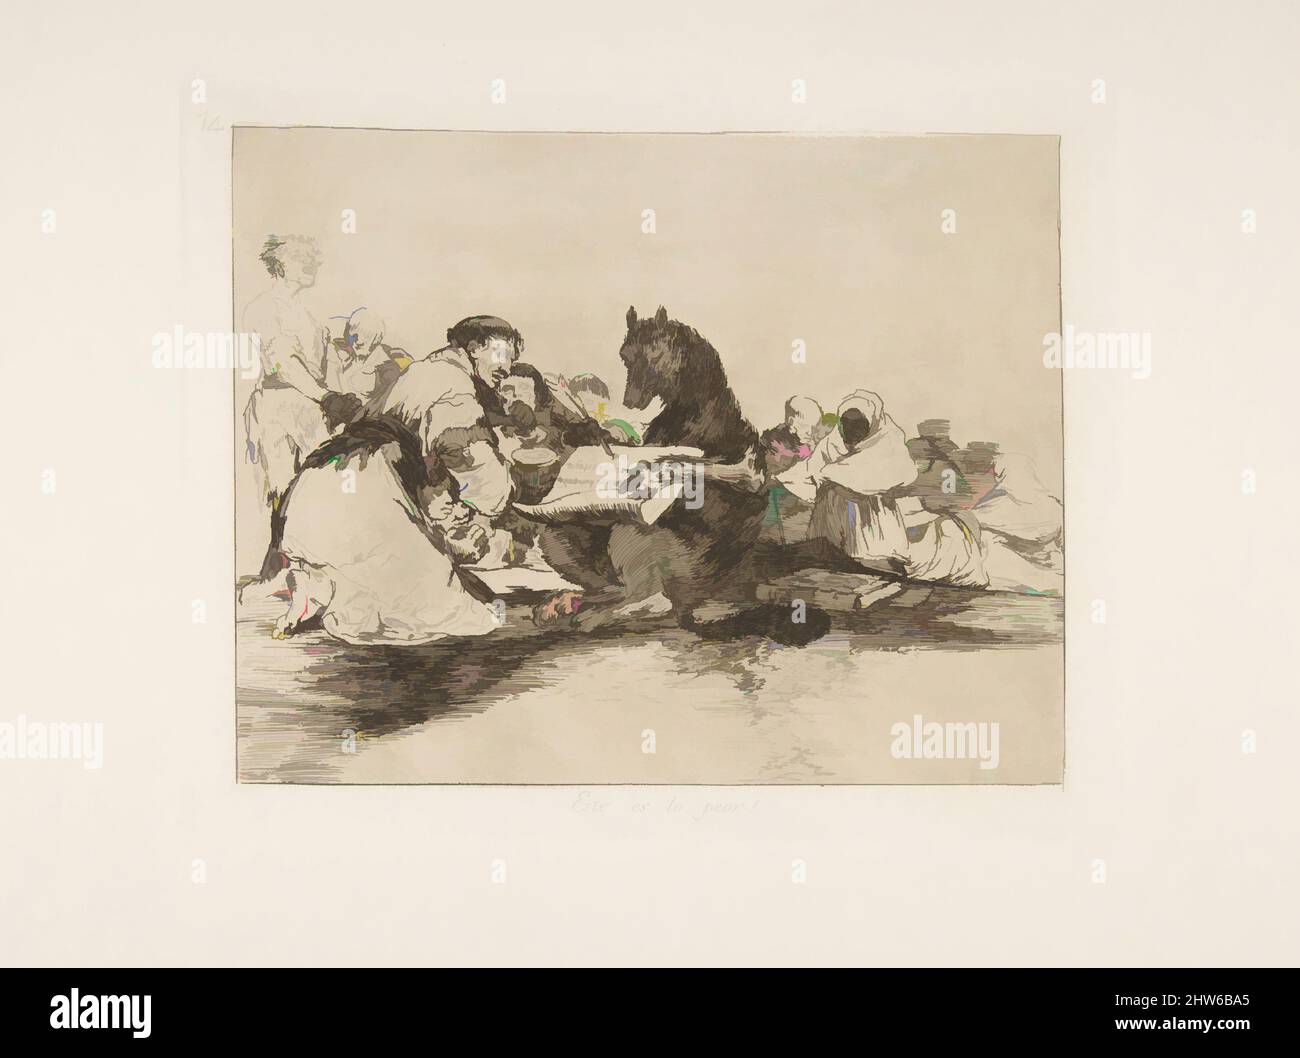 Art inspiré par la planche 74 de 'les désastres de la guerre' (Los Desastres de la Guerra): 'C'est le pire de lui!' (Esto es lo peor!), après 1814–15 (publié en 1863), Etching et burnisher, plaque : 6 15/16 × 8 1/2 po. (17,6 × 21,6 cm), Prints, Goya (Francisco de Goya y Lucientes) (espagnol, oeuvres classiques modernisées par Artotop avec une touche de modernité. Formes, couleur et valeur, impact visuel accrocheur sur l'art émotions par la liberté d'œuvres d'art d'une manière contemporaine. Un message intemporel qui cherche une nouvelle direction créative. Artistes qui se tournent vers le support numérique et créent le NFT Artotop Banque D'Images